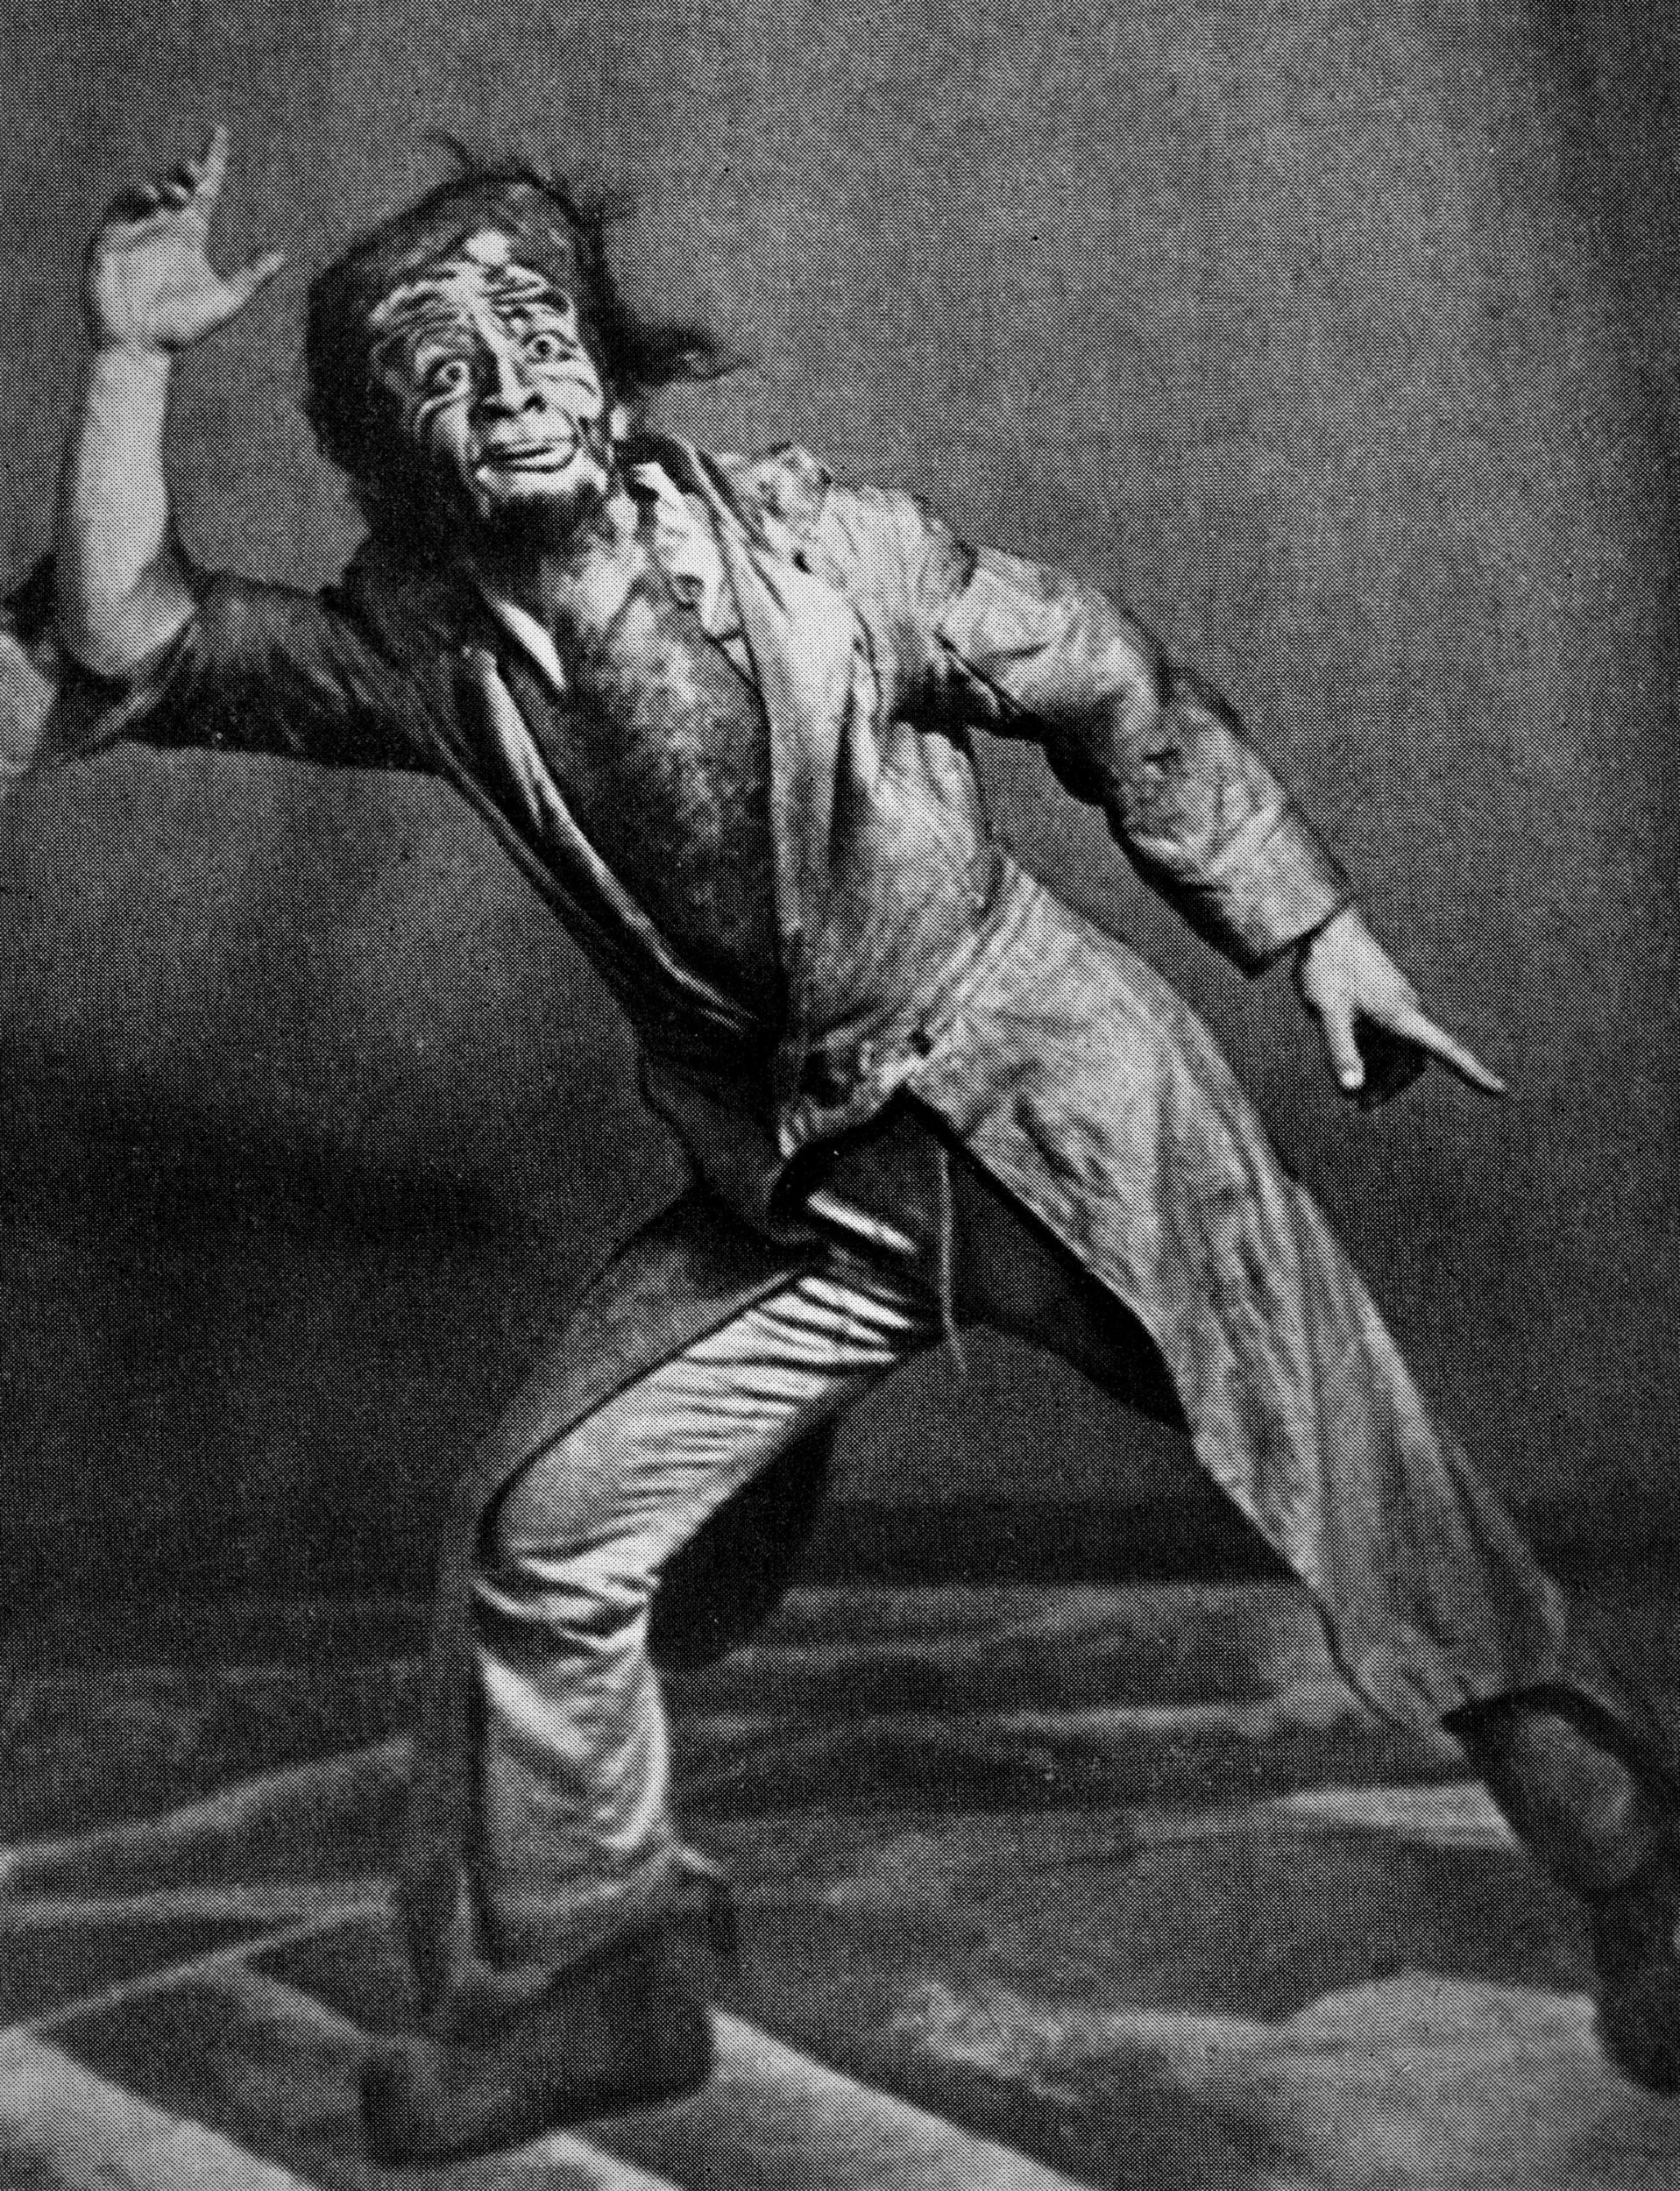 Photographie de Mikhoels dans le rôle du Badhen 1 dans La Nuit sur le vieux marché de I. L. Peretz. Mise en scène : A. Granovski ; décors, costumes et grimages : R. Falk. GOSET, 1925. 